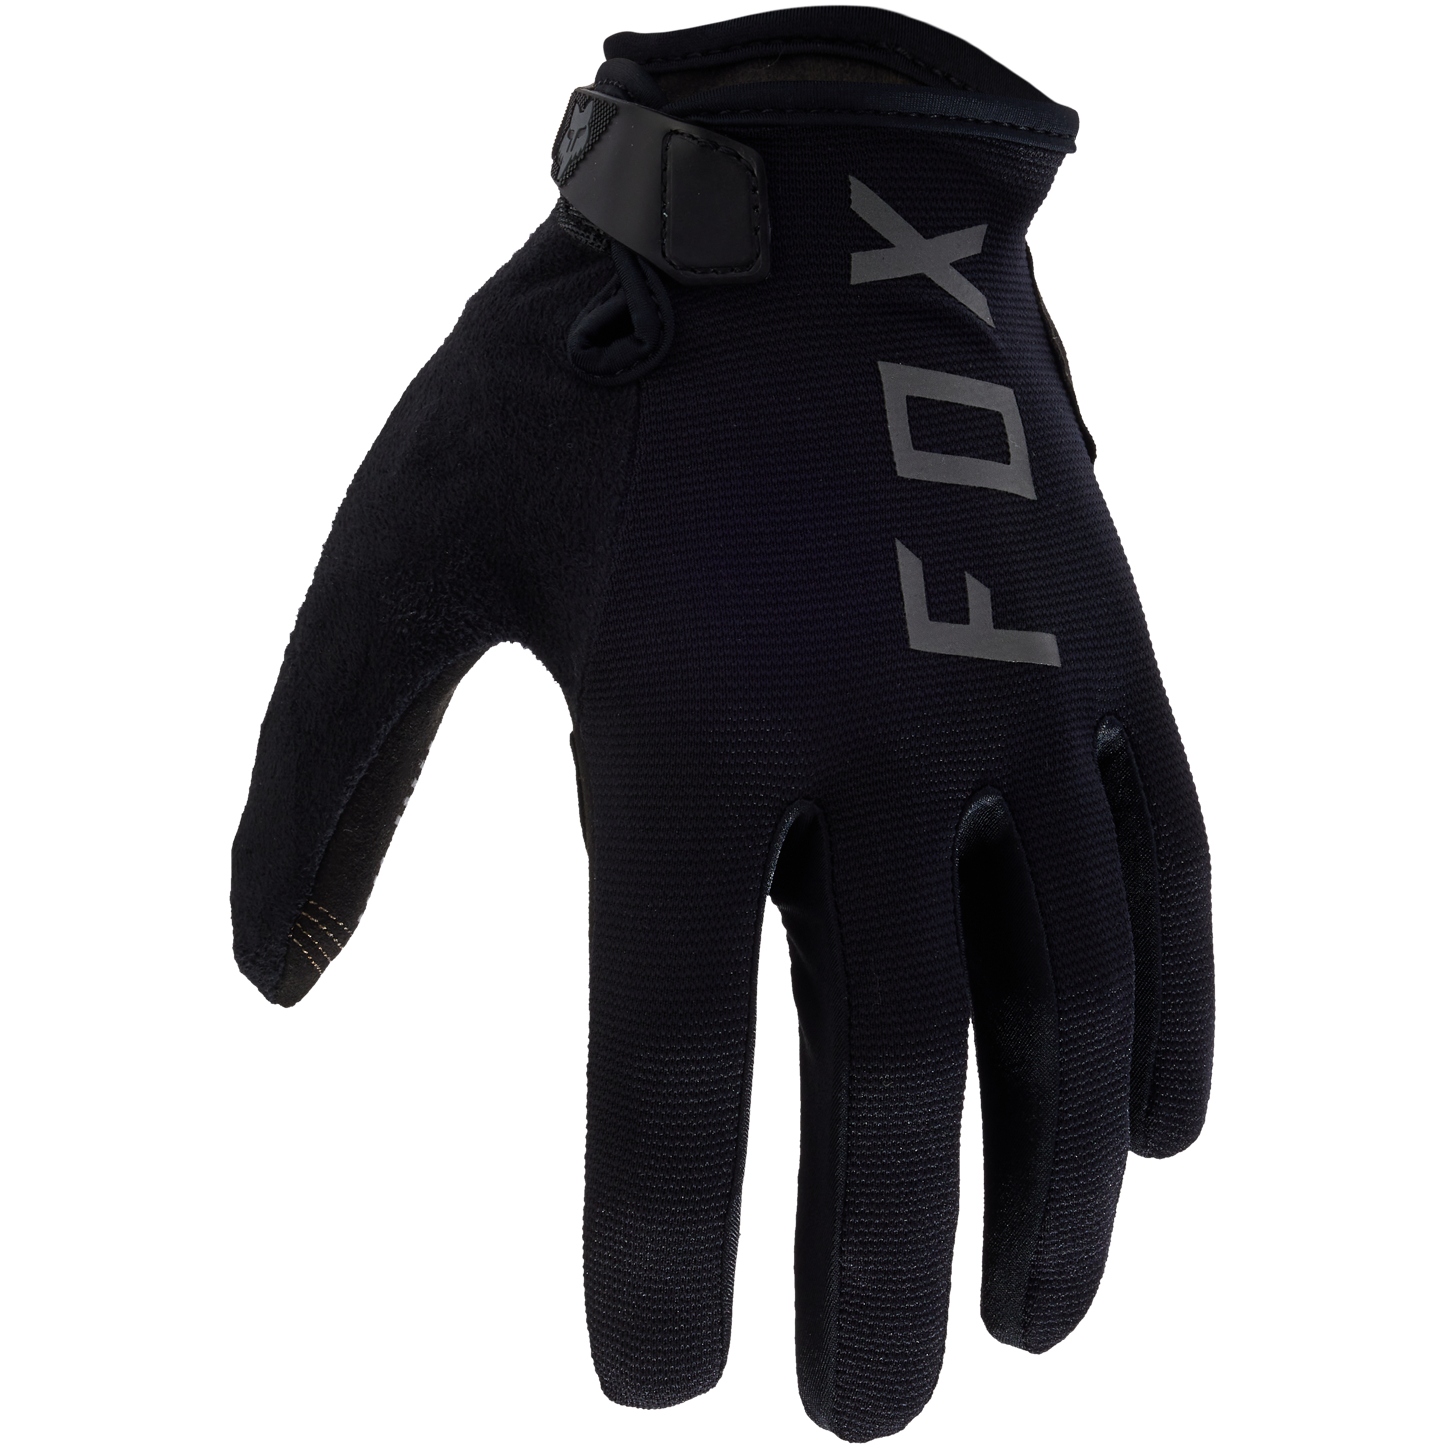 Productfoto van FOX Ranger Gel MTB Fietshandschoenen Heren - zwart